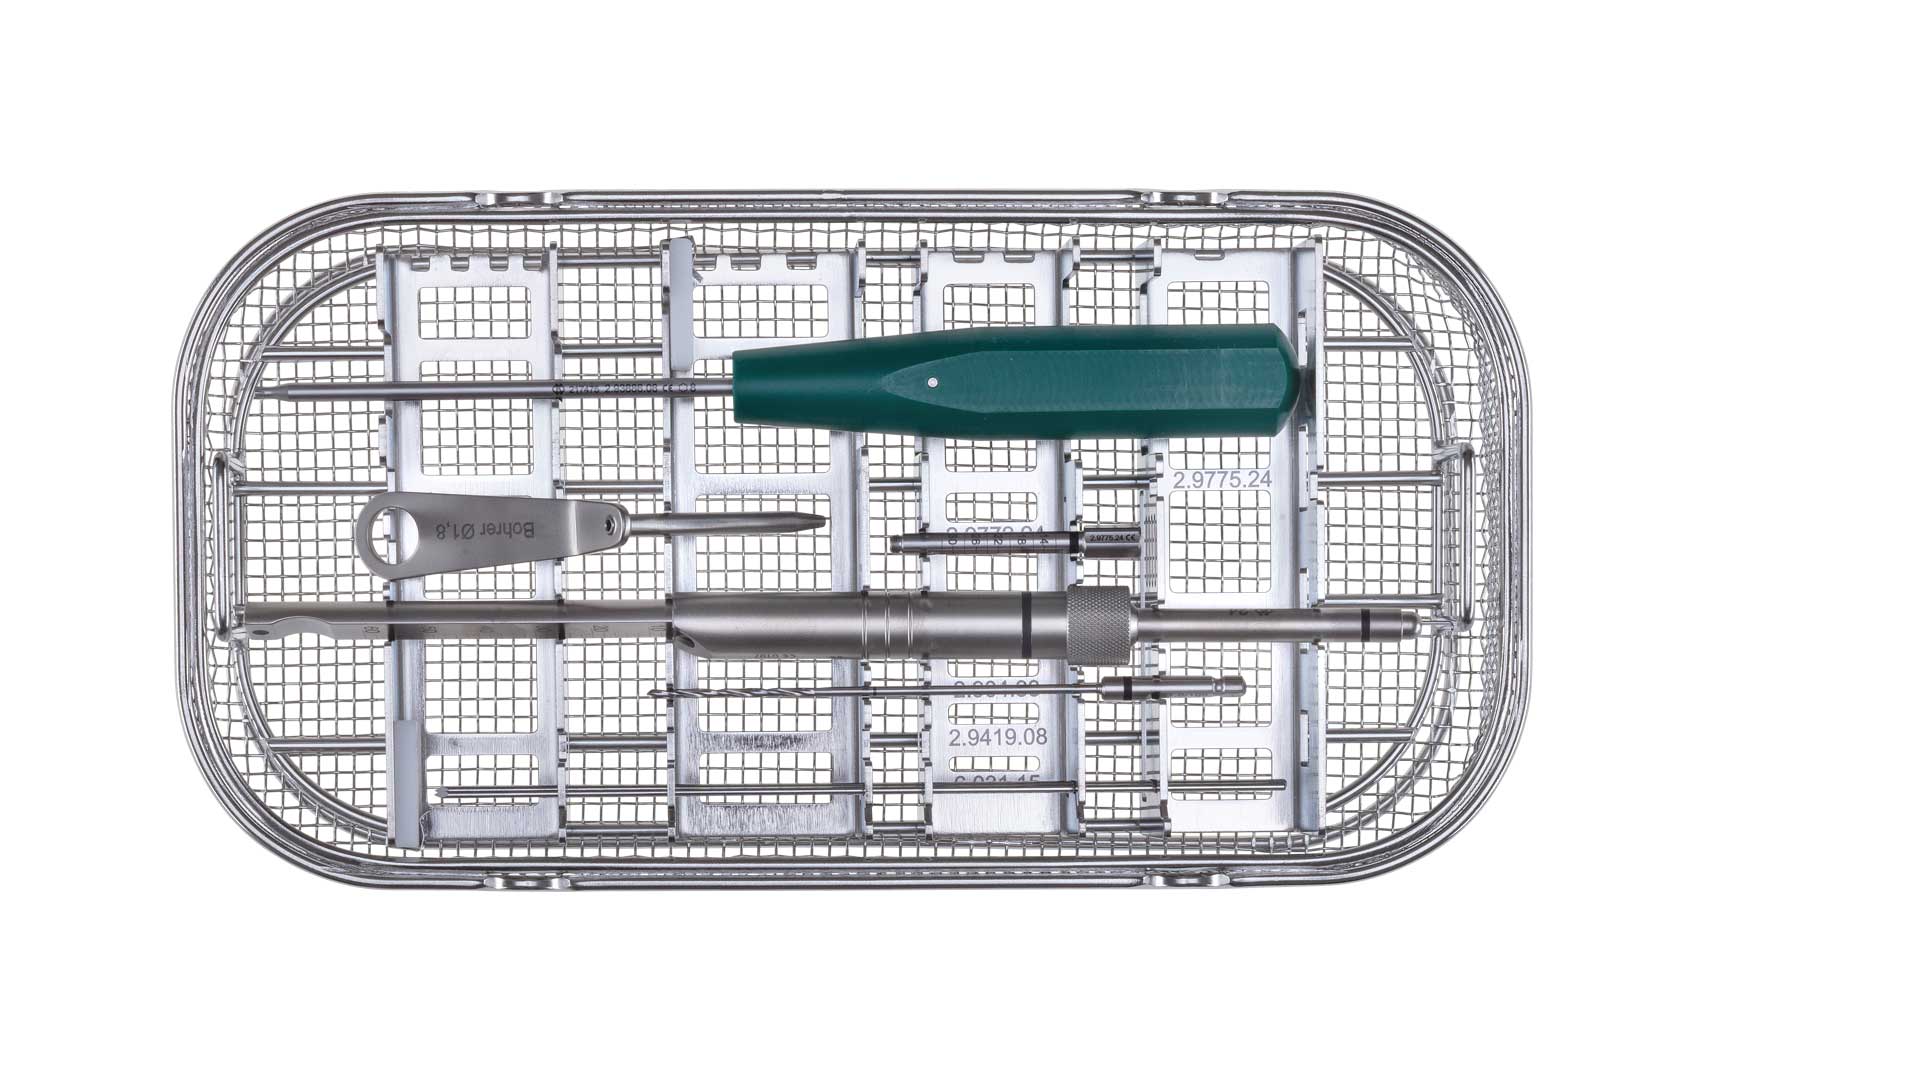 Königsee Implantate Produkte: Set Instrumente 2.4 ISR, aus der Kategorie Instumente